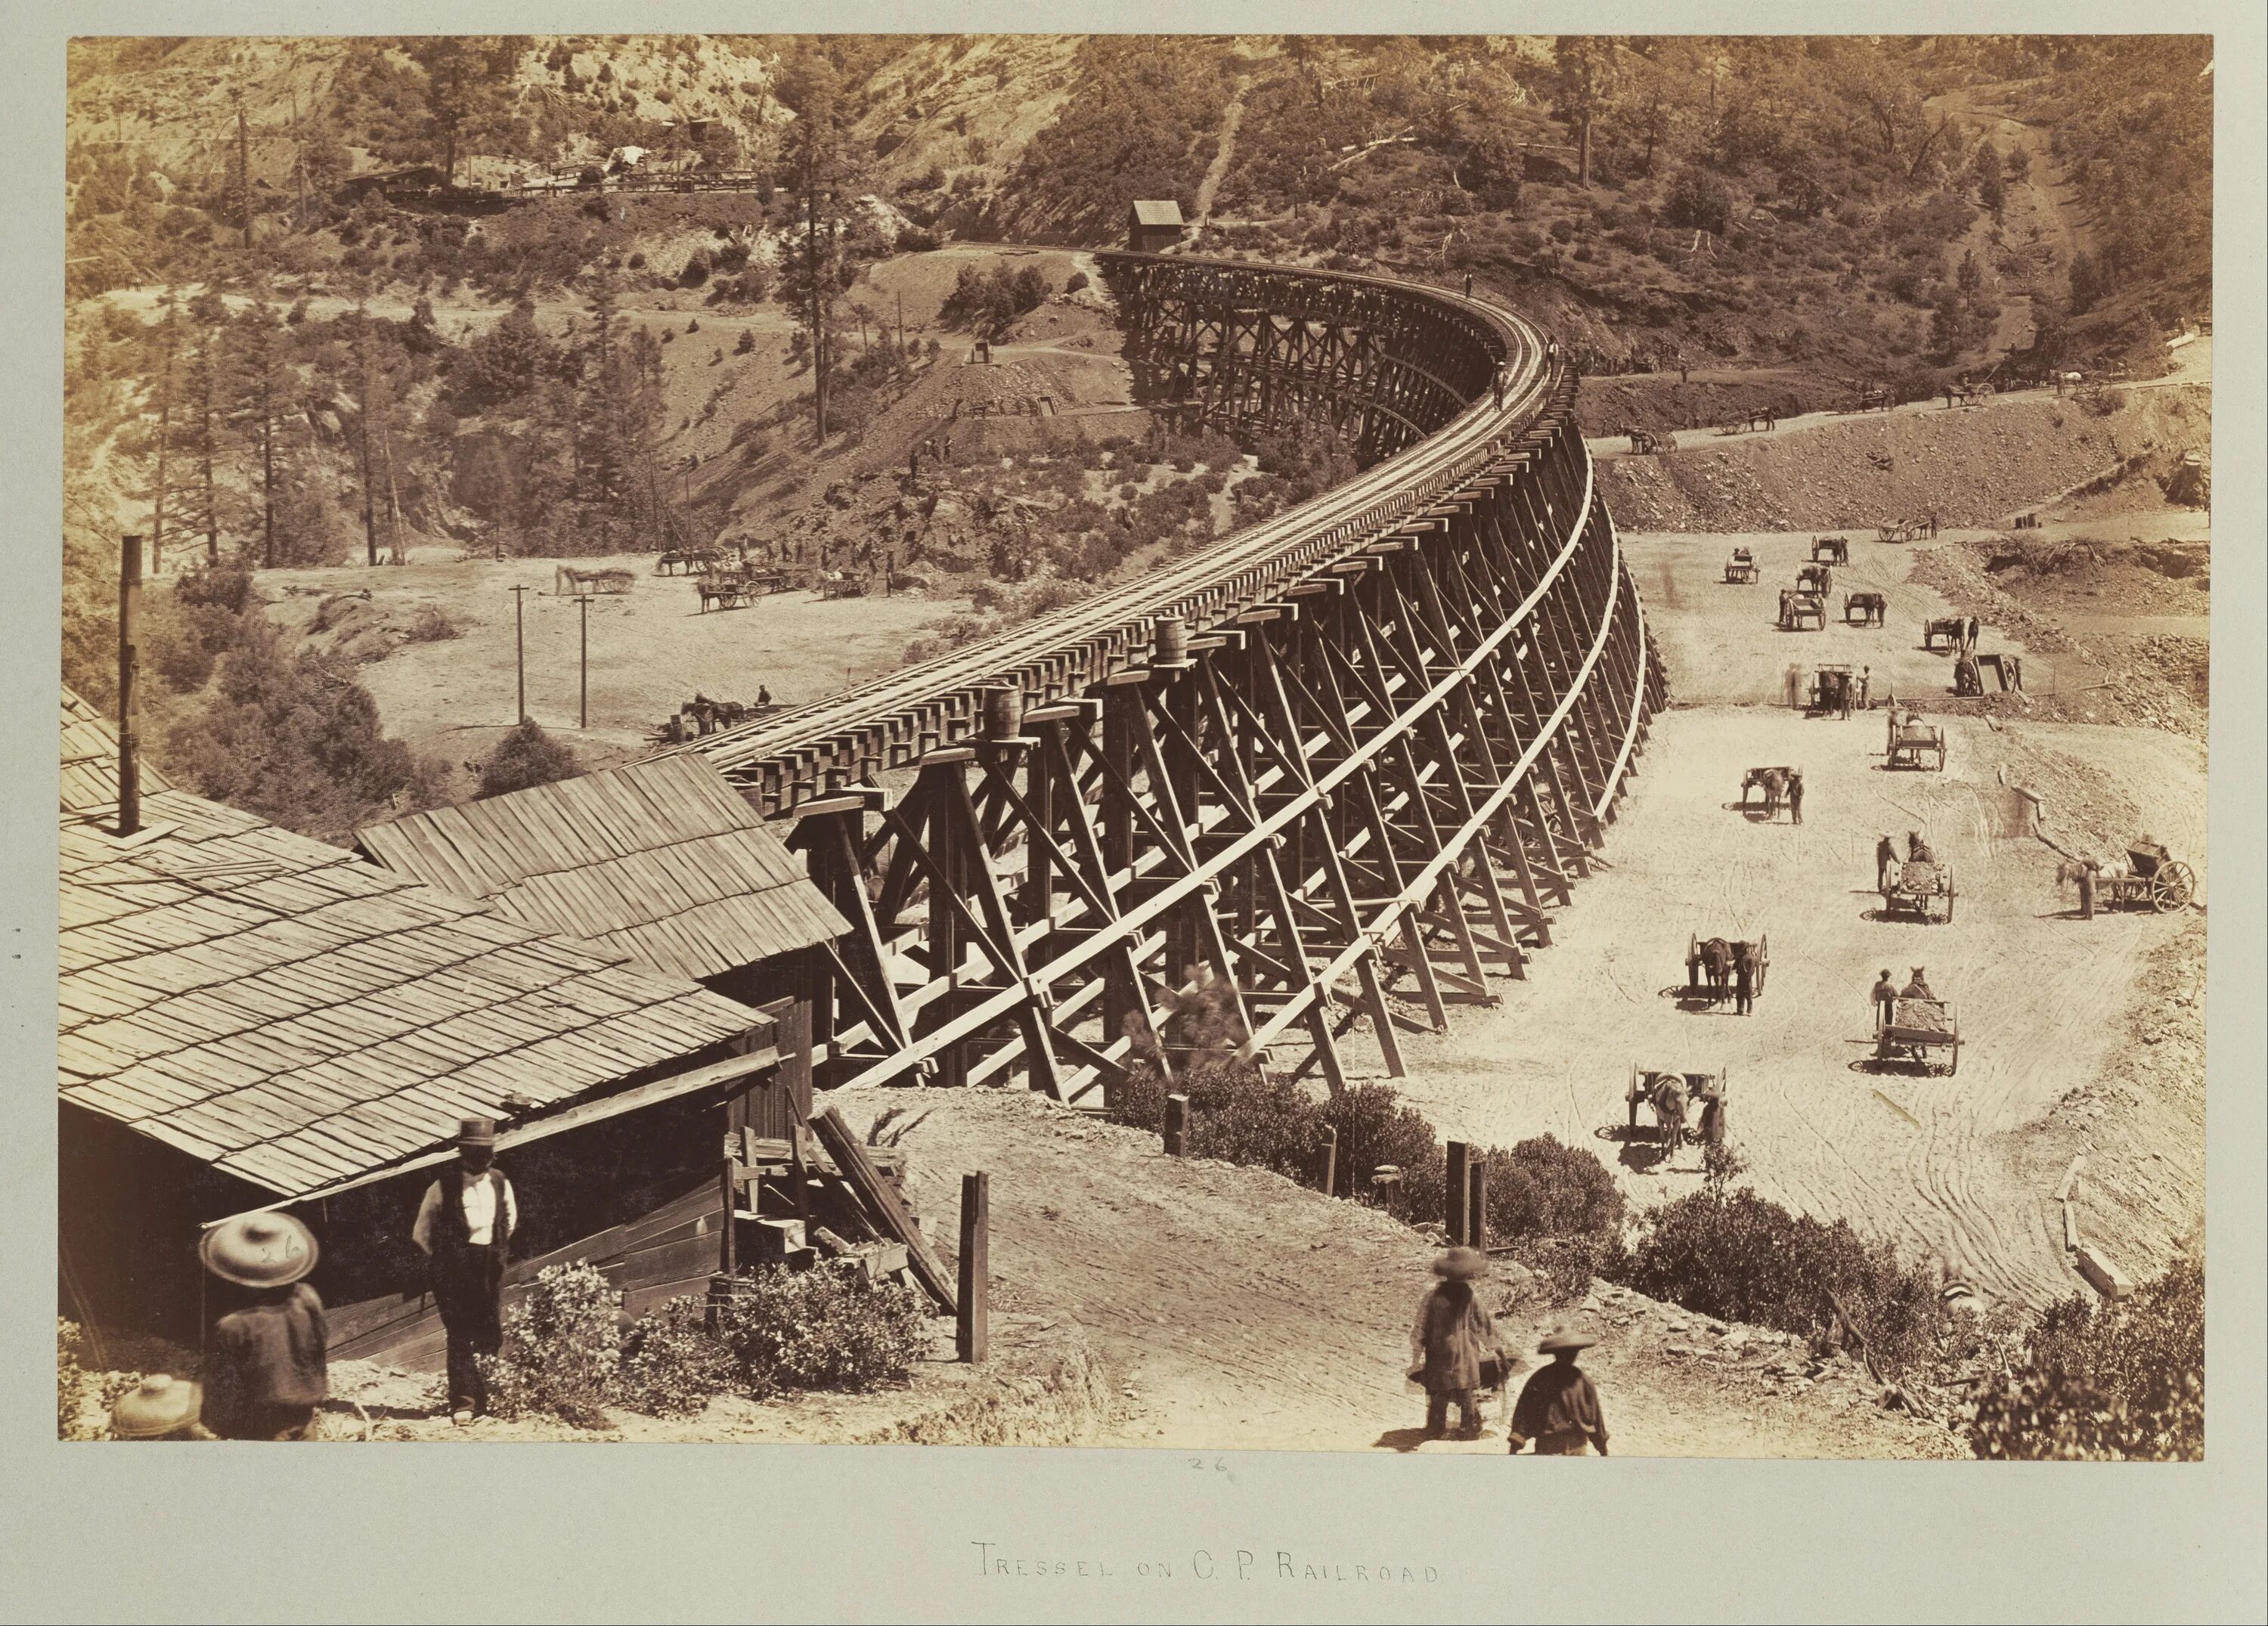 Централ Пасифик железная дорога. Железные дороги 19 века США. Железнодорожные мосты США В 19в.. ЖД США 19 век.